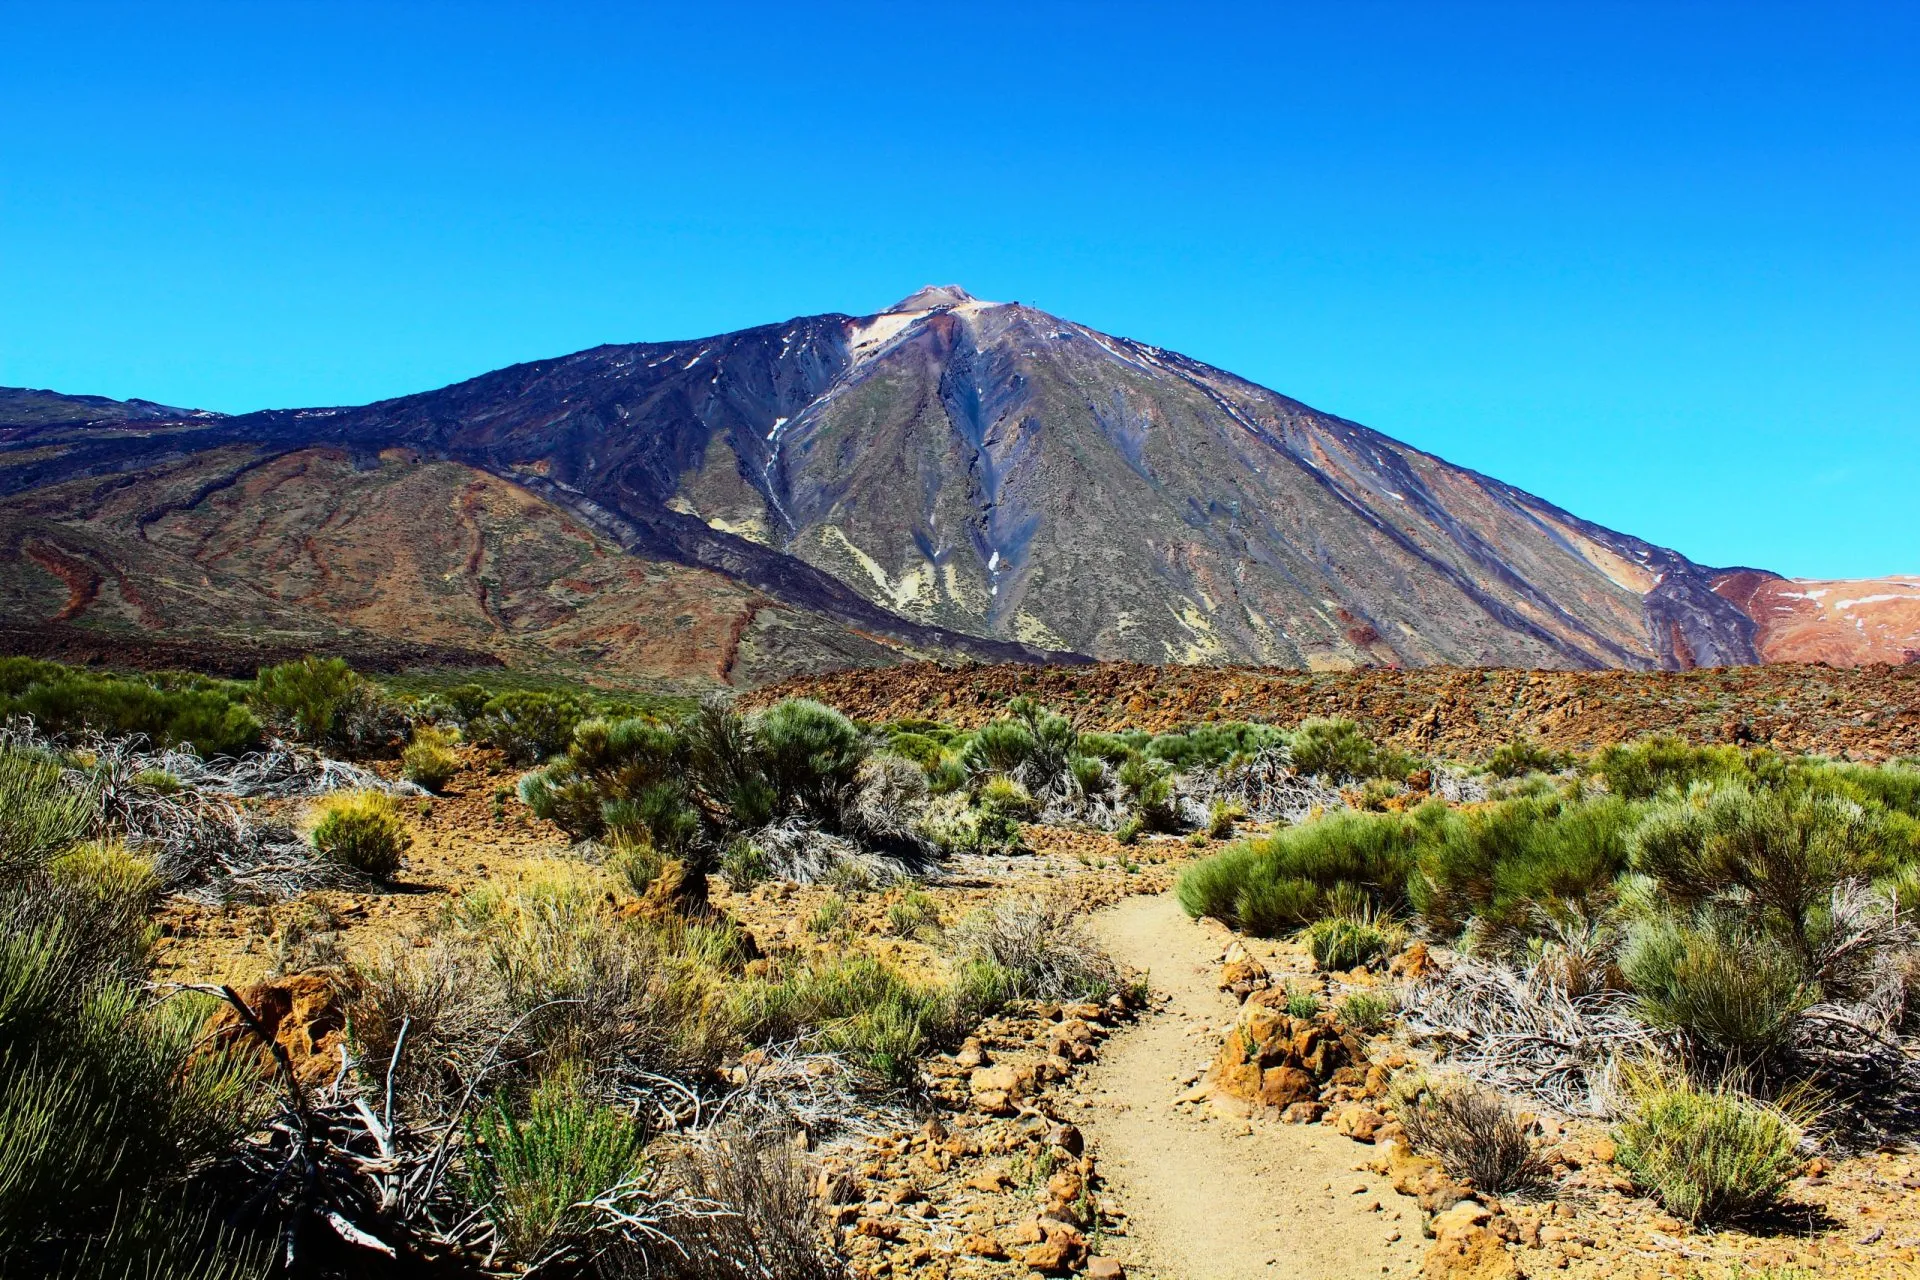 Wüste in der Nähe des Vulkans Teide (Teneriffa, Kanarische Inseln, Spanien)